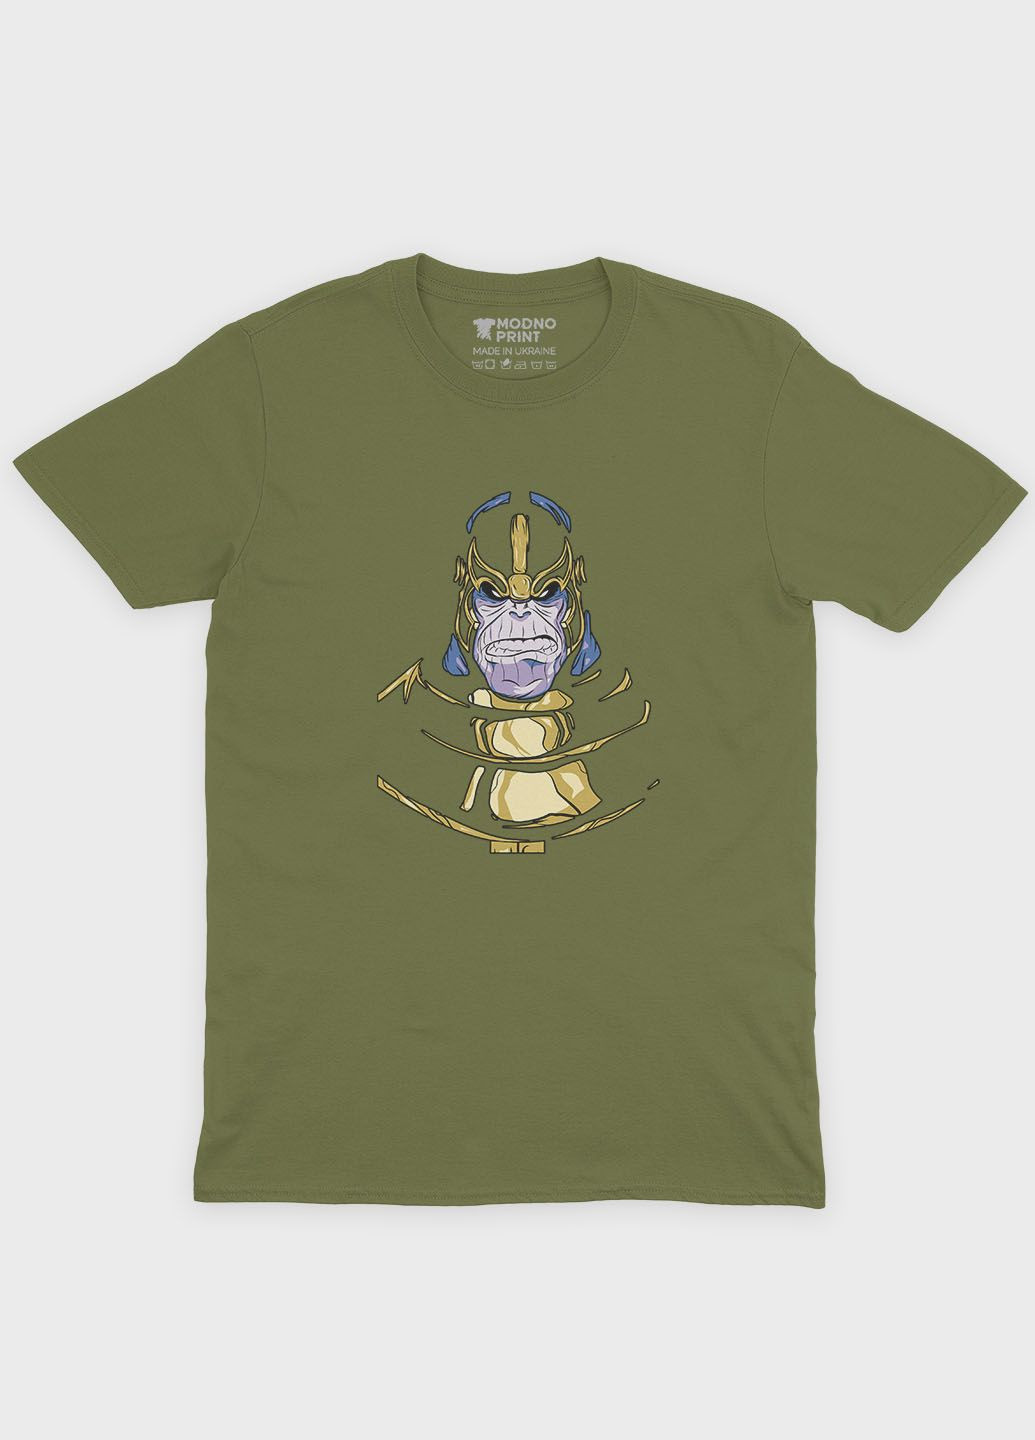 Хаки (оливковая) летняя мужская футболка с принтом супезлоды - танос (ts001-1-hgr-006-019-018-f) Modno